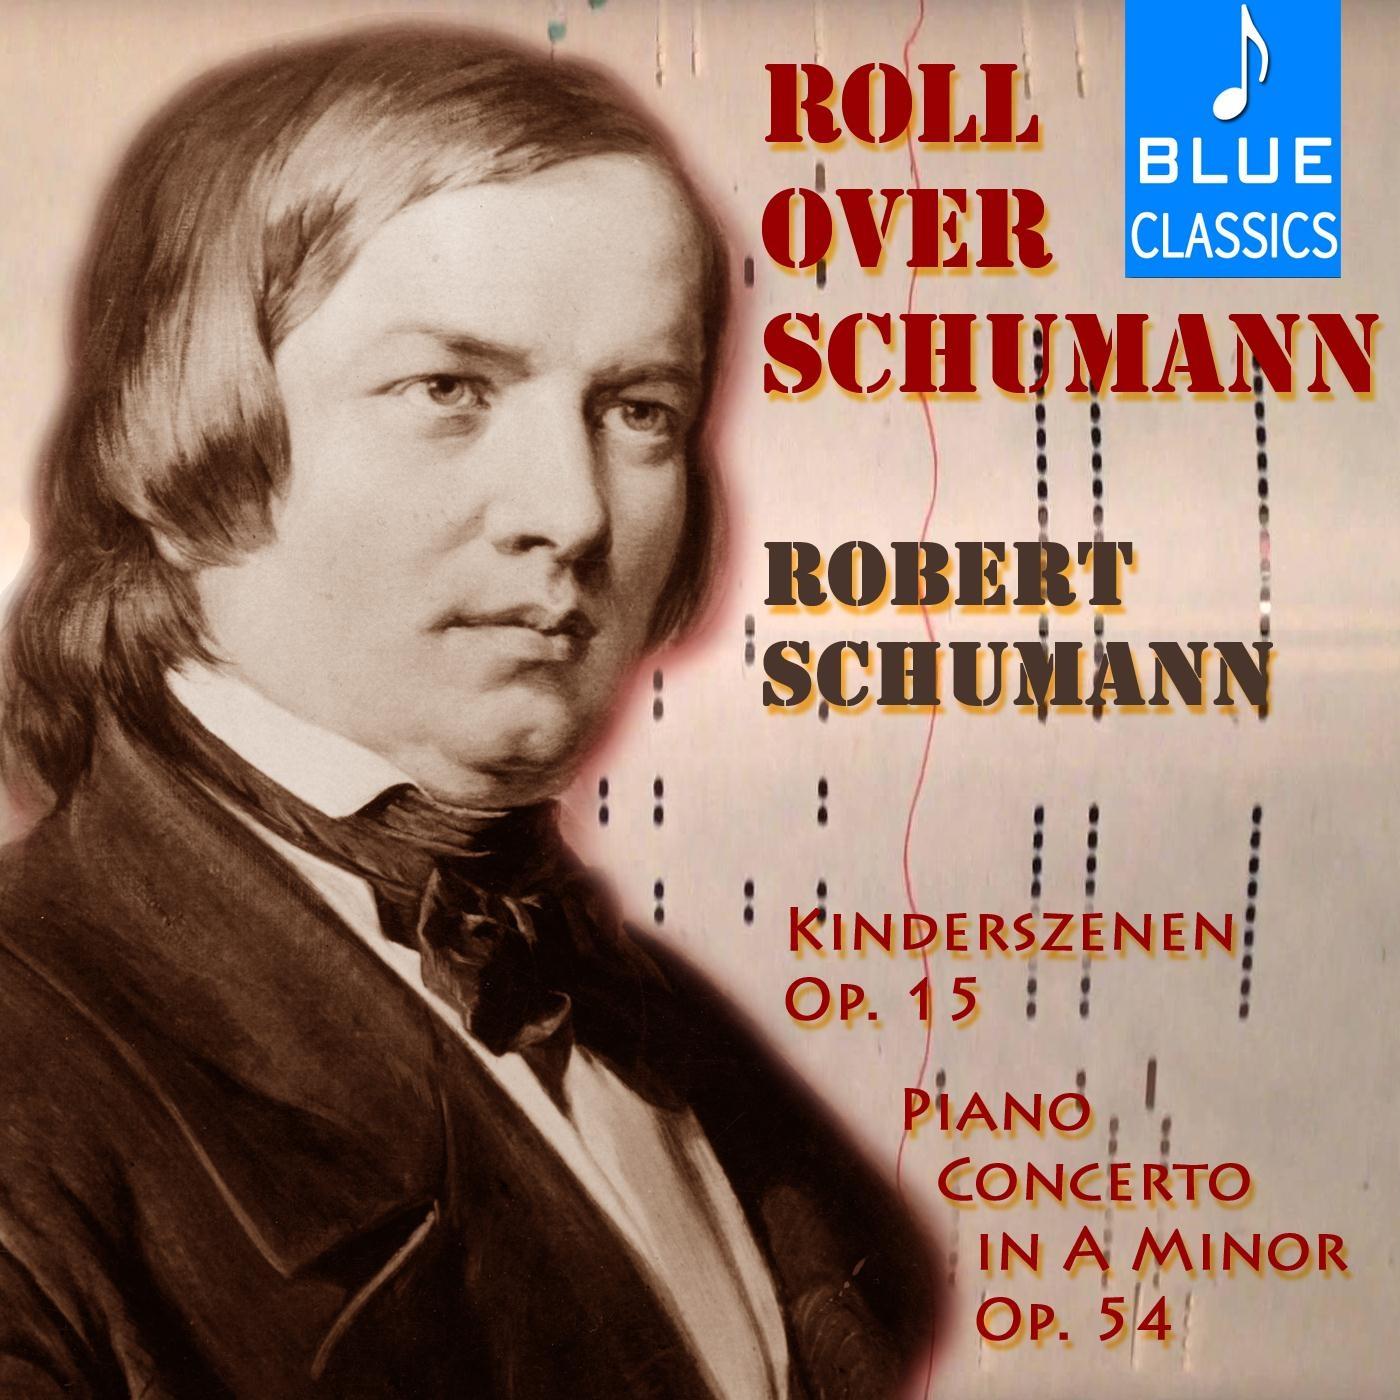 Roll over Schumann: Kinderszenen, Op. 15 & Piano Concerto in A Minor, Op. 54